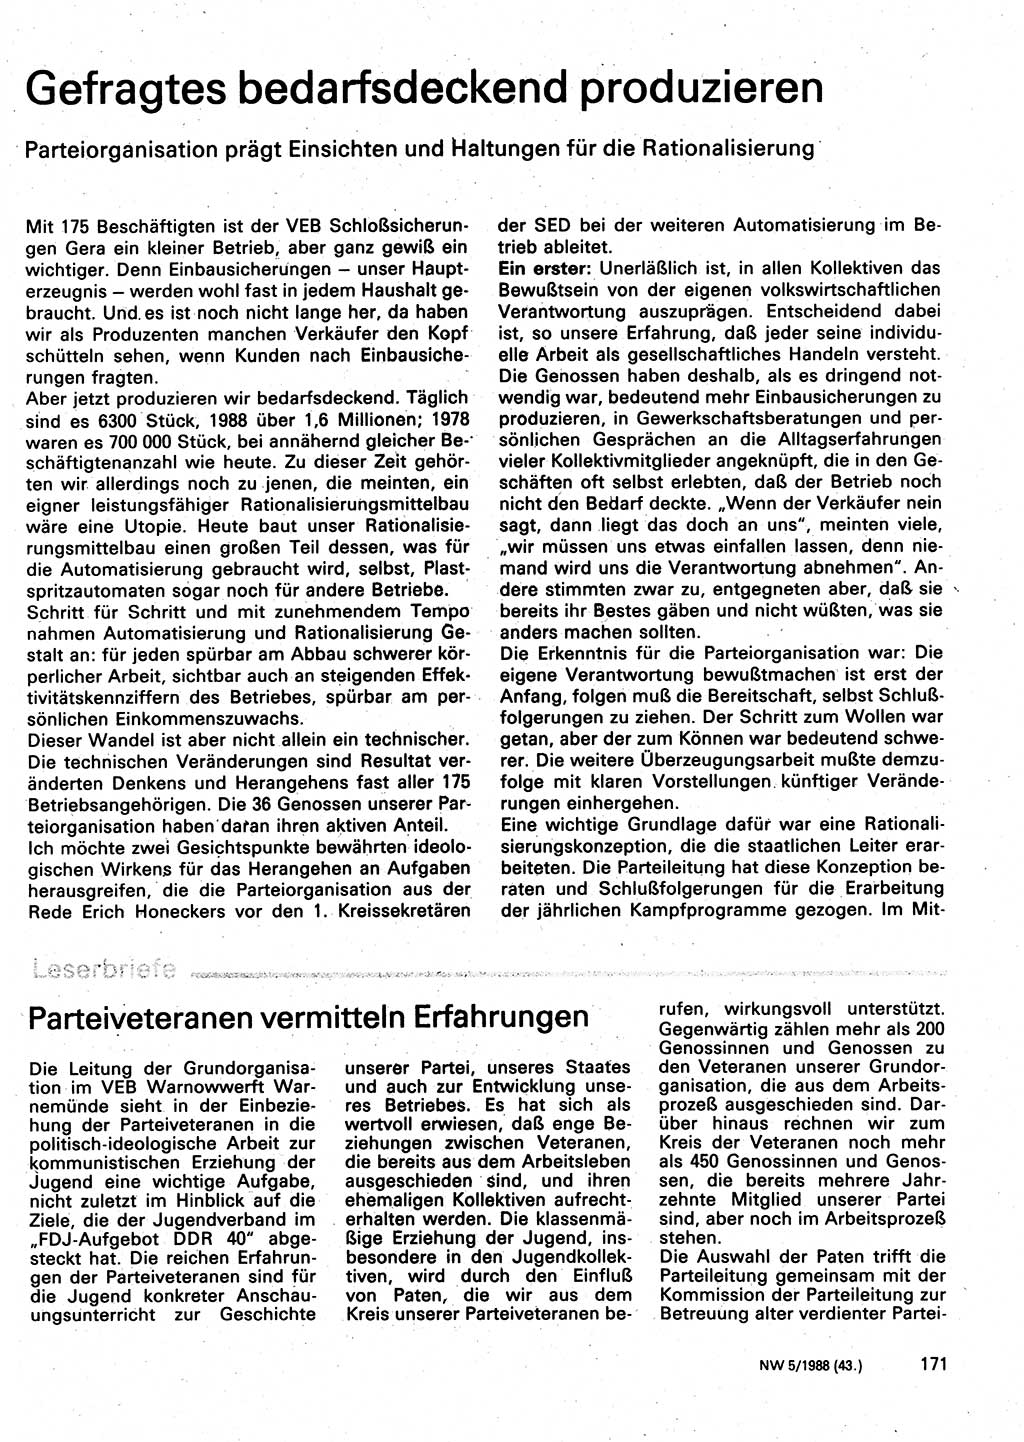 Neuer Weg (NW), Organ des Zentralkomitees (ZK) der SED (Sozialistische Einheitspartei Deutschlands) für Fragen des Parteilebens, 43. Jahrgang [Deutsche Demokratische Republik (DDR)] 1988, Seite 171 (NW ZK SED DDR 1988, S. 171)